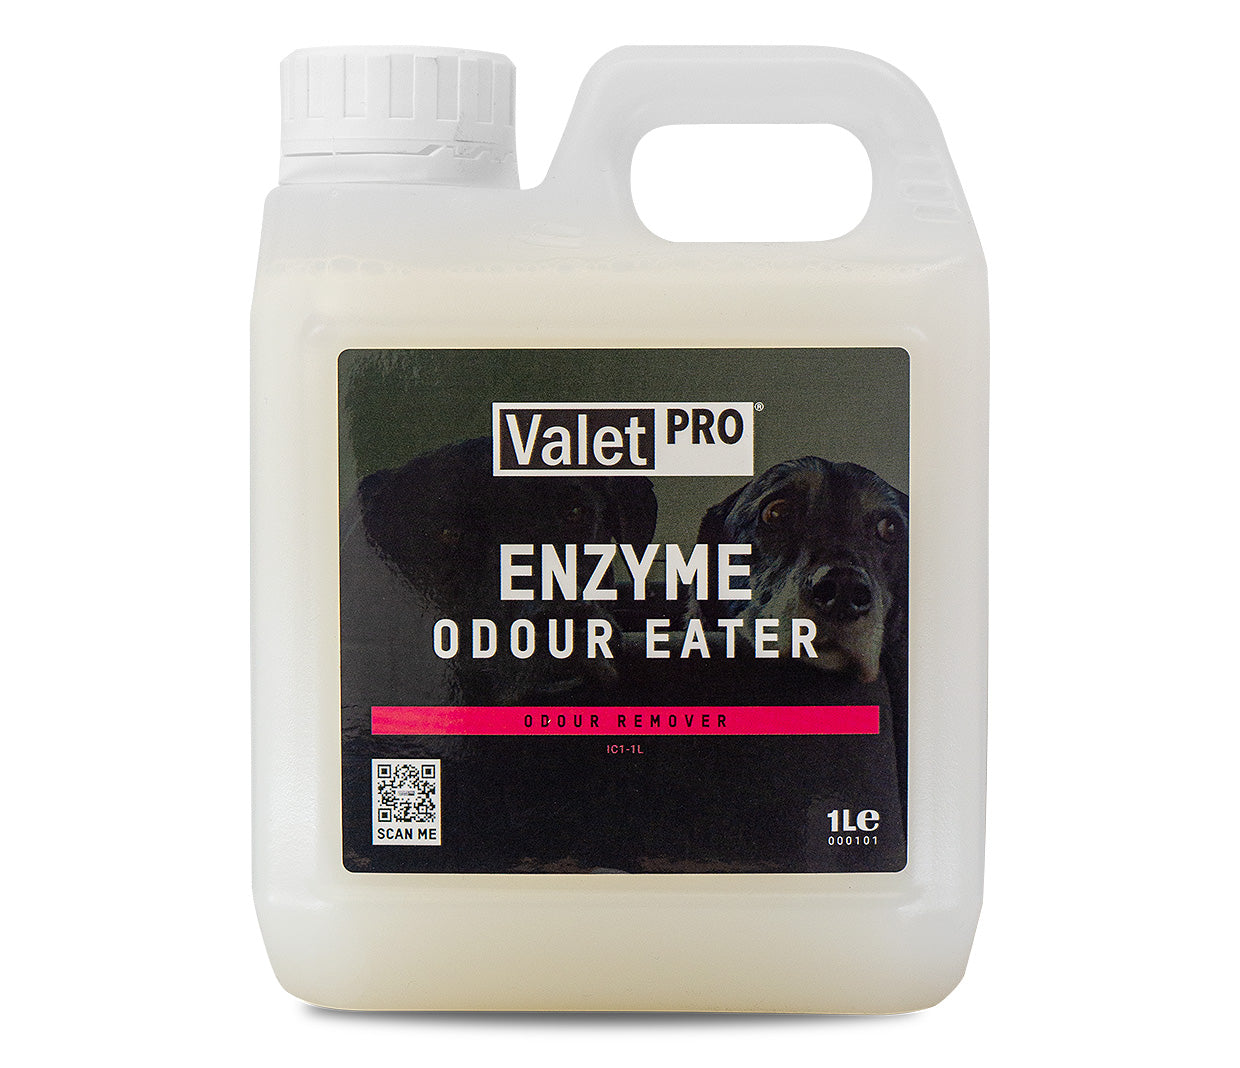 Valet Pro - Enzyme Odour Eater